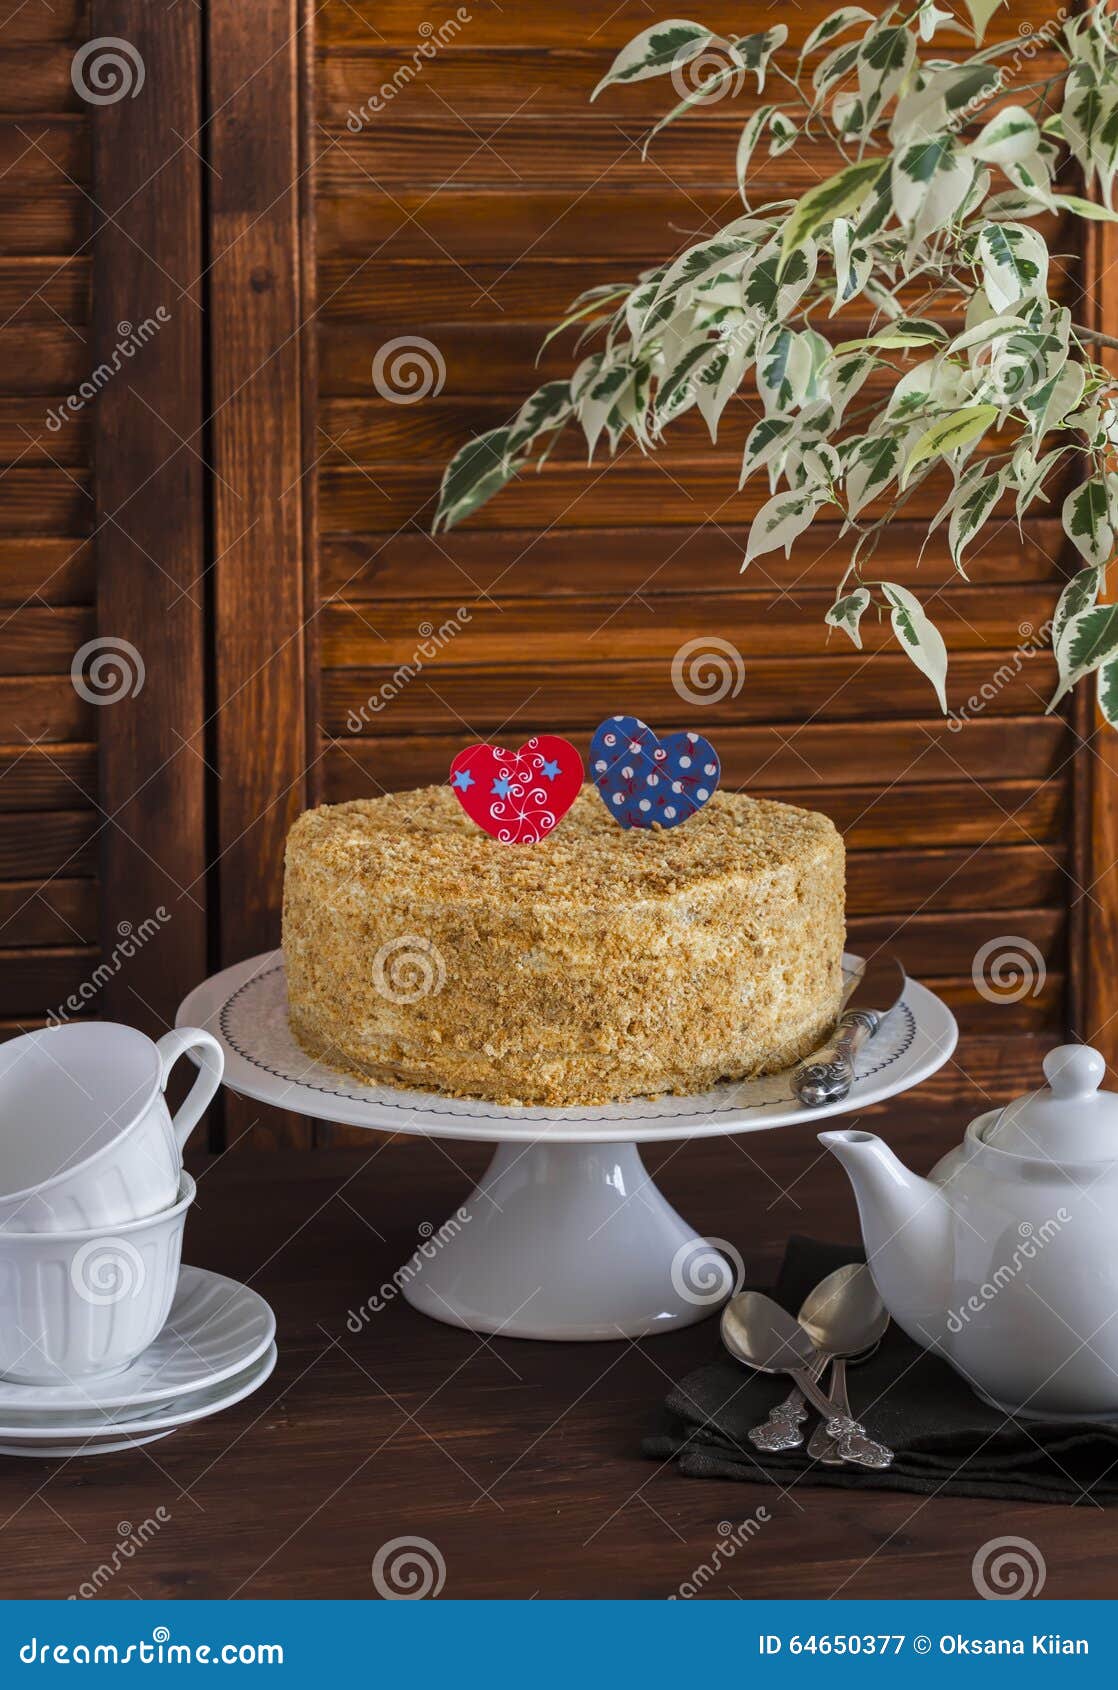 Gâteau Fait Maison Sur Un Support En Céramique Pour Le Gâteau